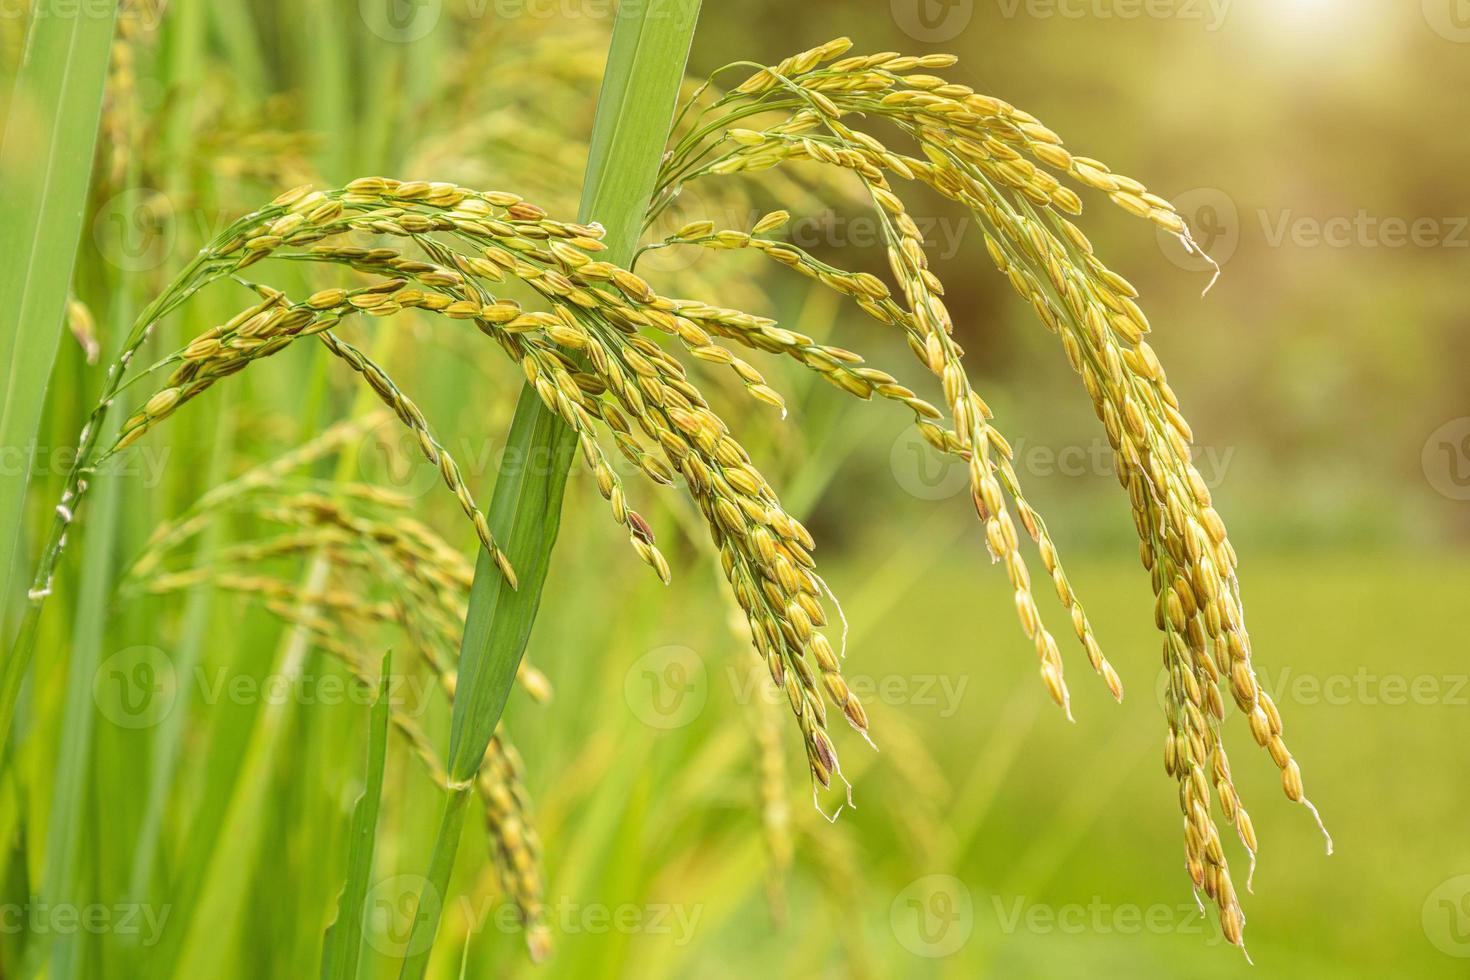 champ de riz au jasmin, gros plan de graines de riz jaune mûres et feuilles vertes photo